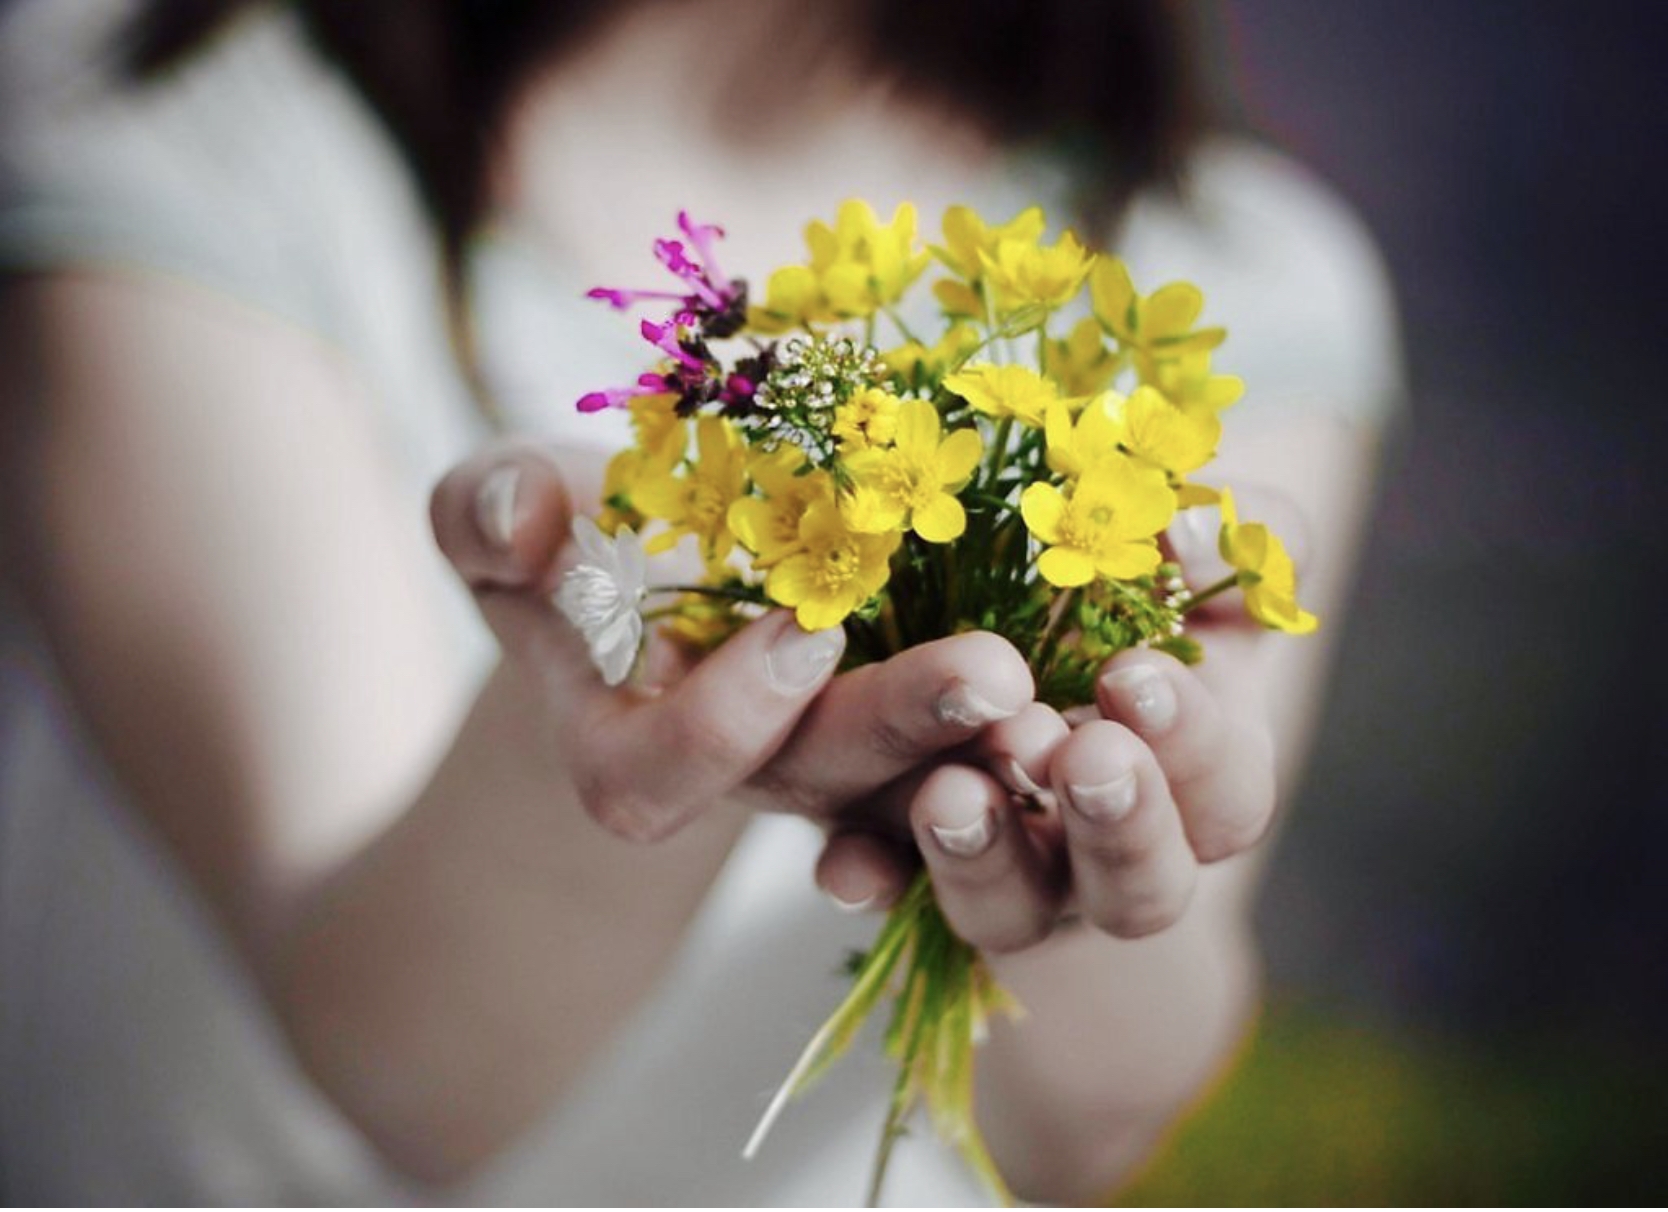 Какой хороший день чтобы подарить цветов текст. Букет в руках. Цветок радости и счастья. Мелкие радости жизни. Букетик цветов в руке.